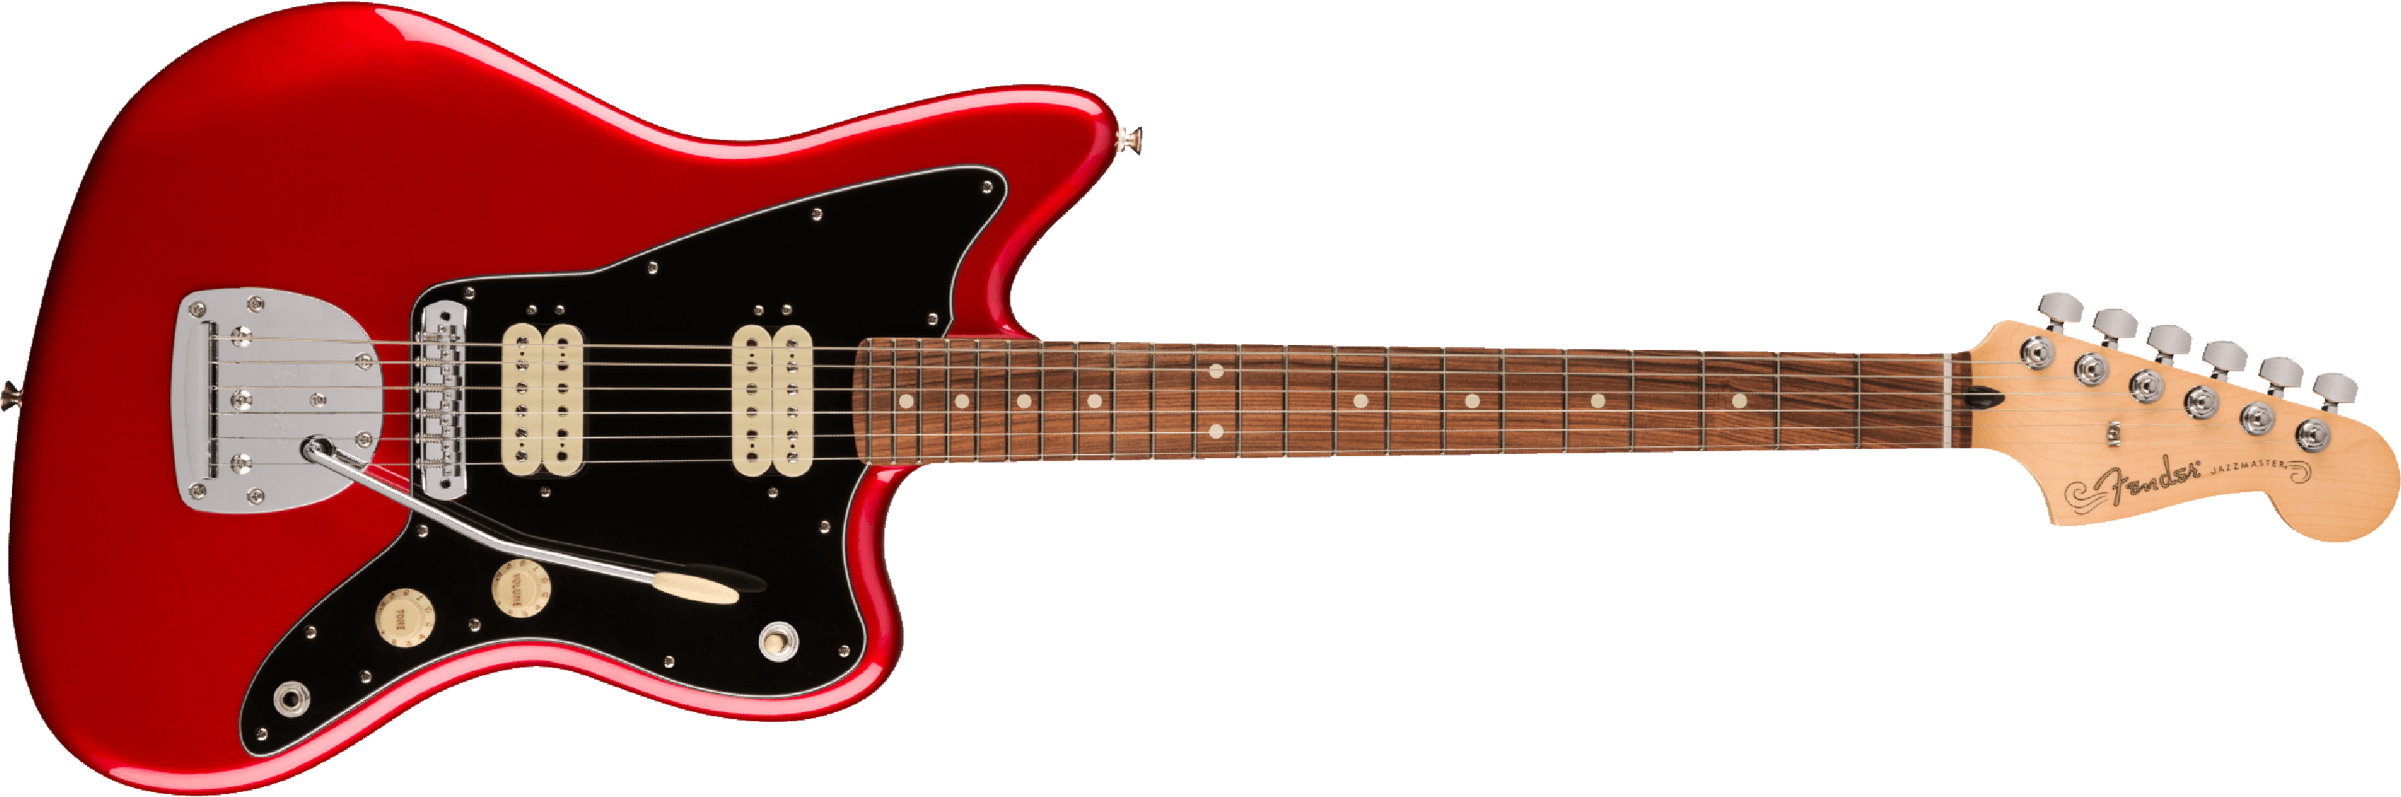 Fender Jazzmaster Player Hh Mex 2023 Trem 2h Pf - Candy Apple Red - Retro-rock elektrische gitaar - Main picture